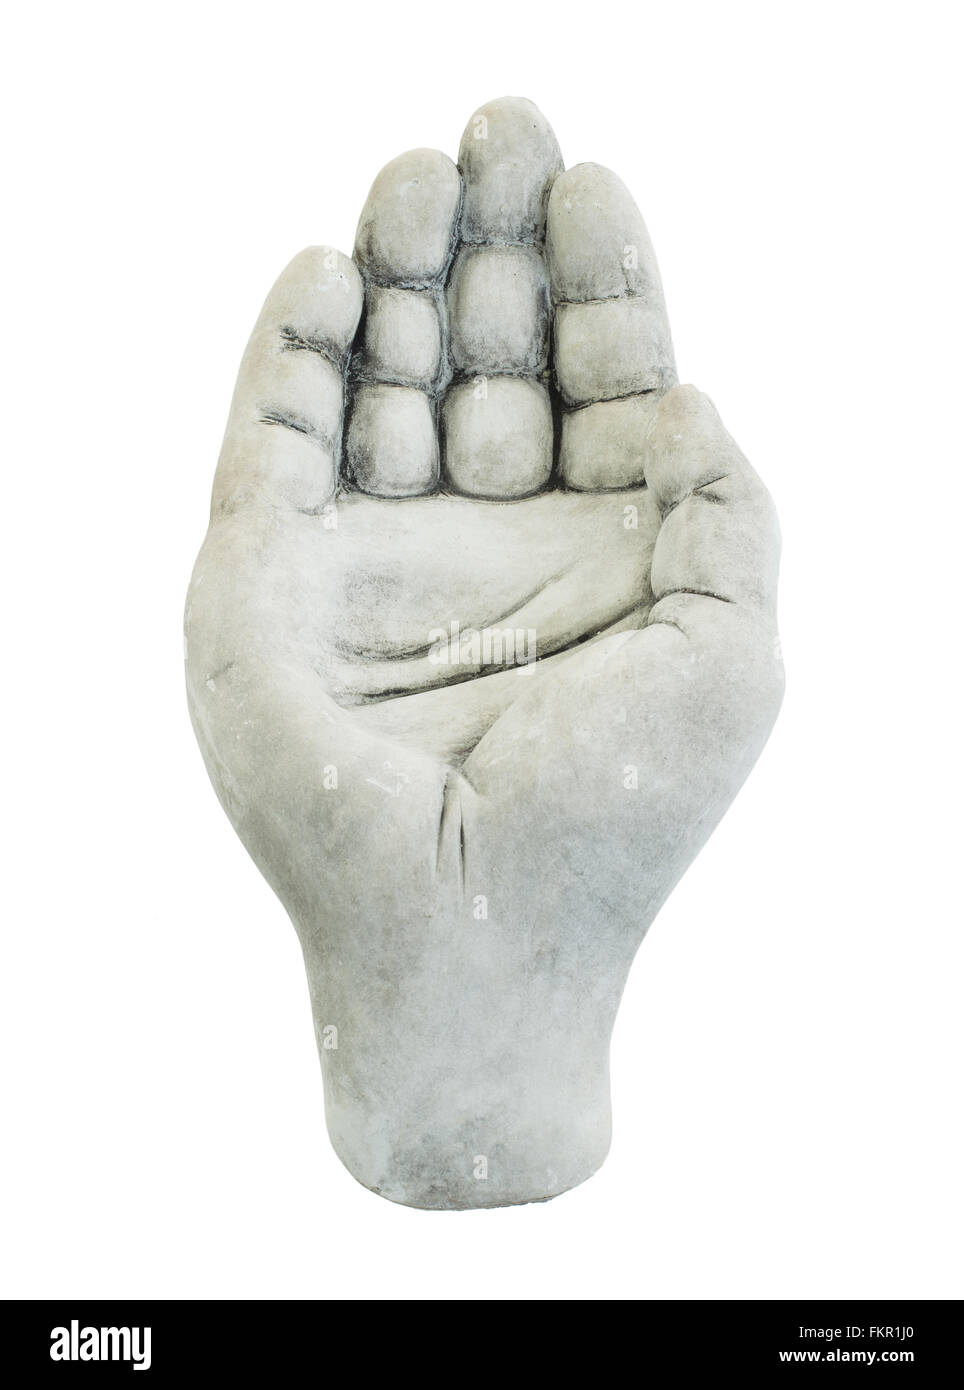 Ciotola di pietra nella forma di una mano, isolato su bianco Foto Stock